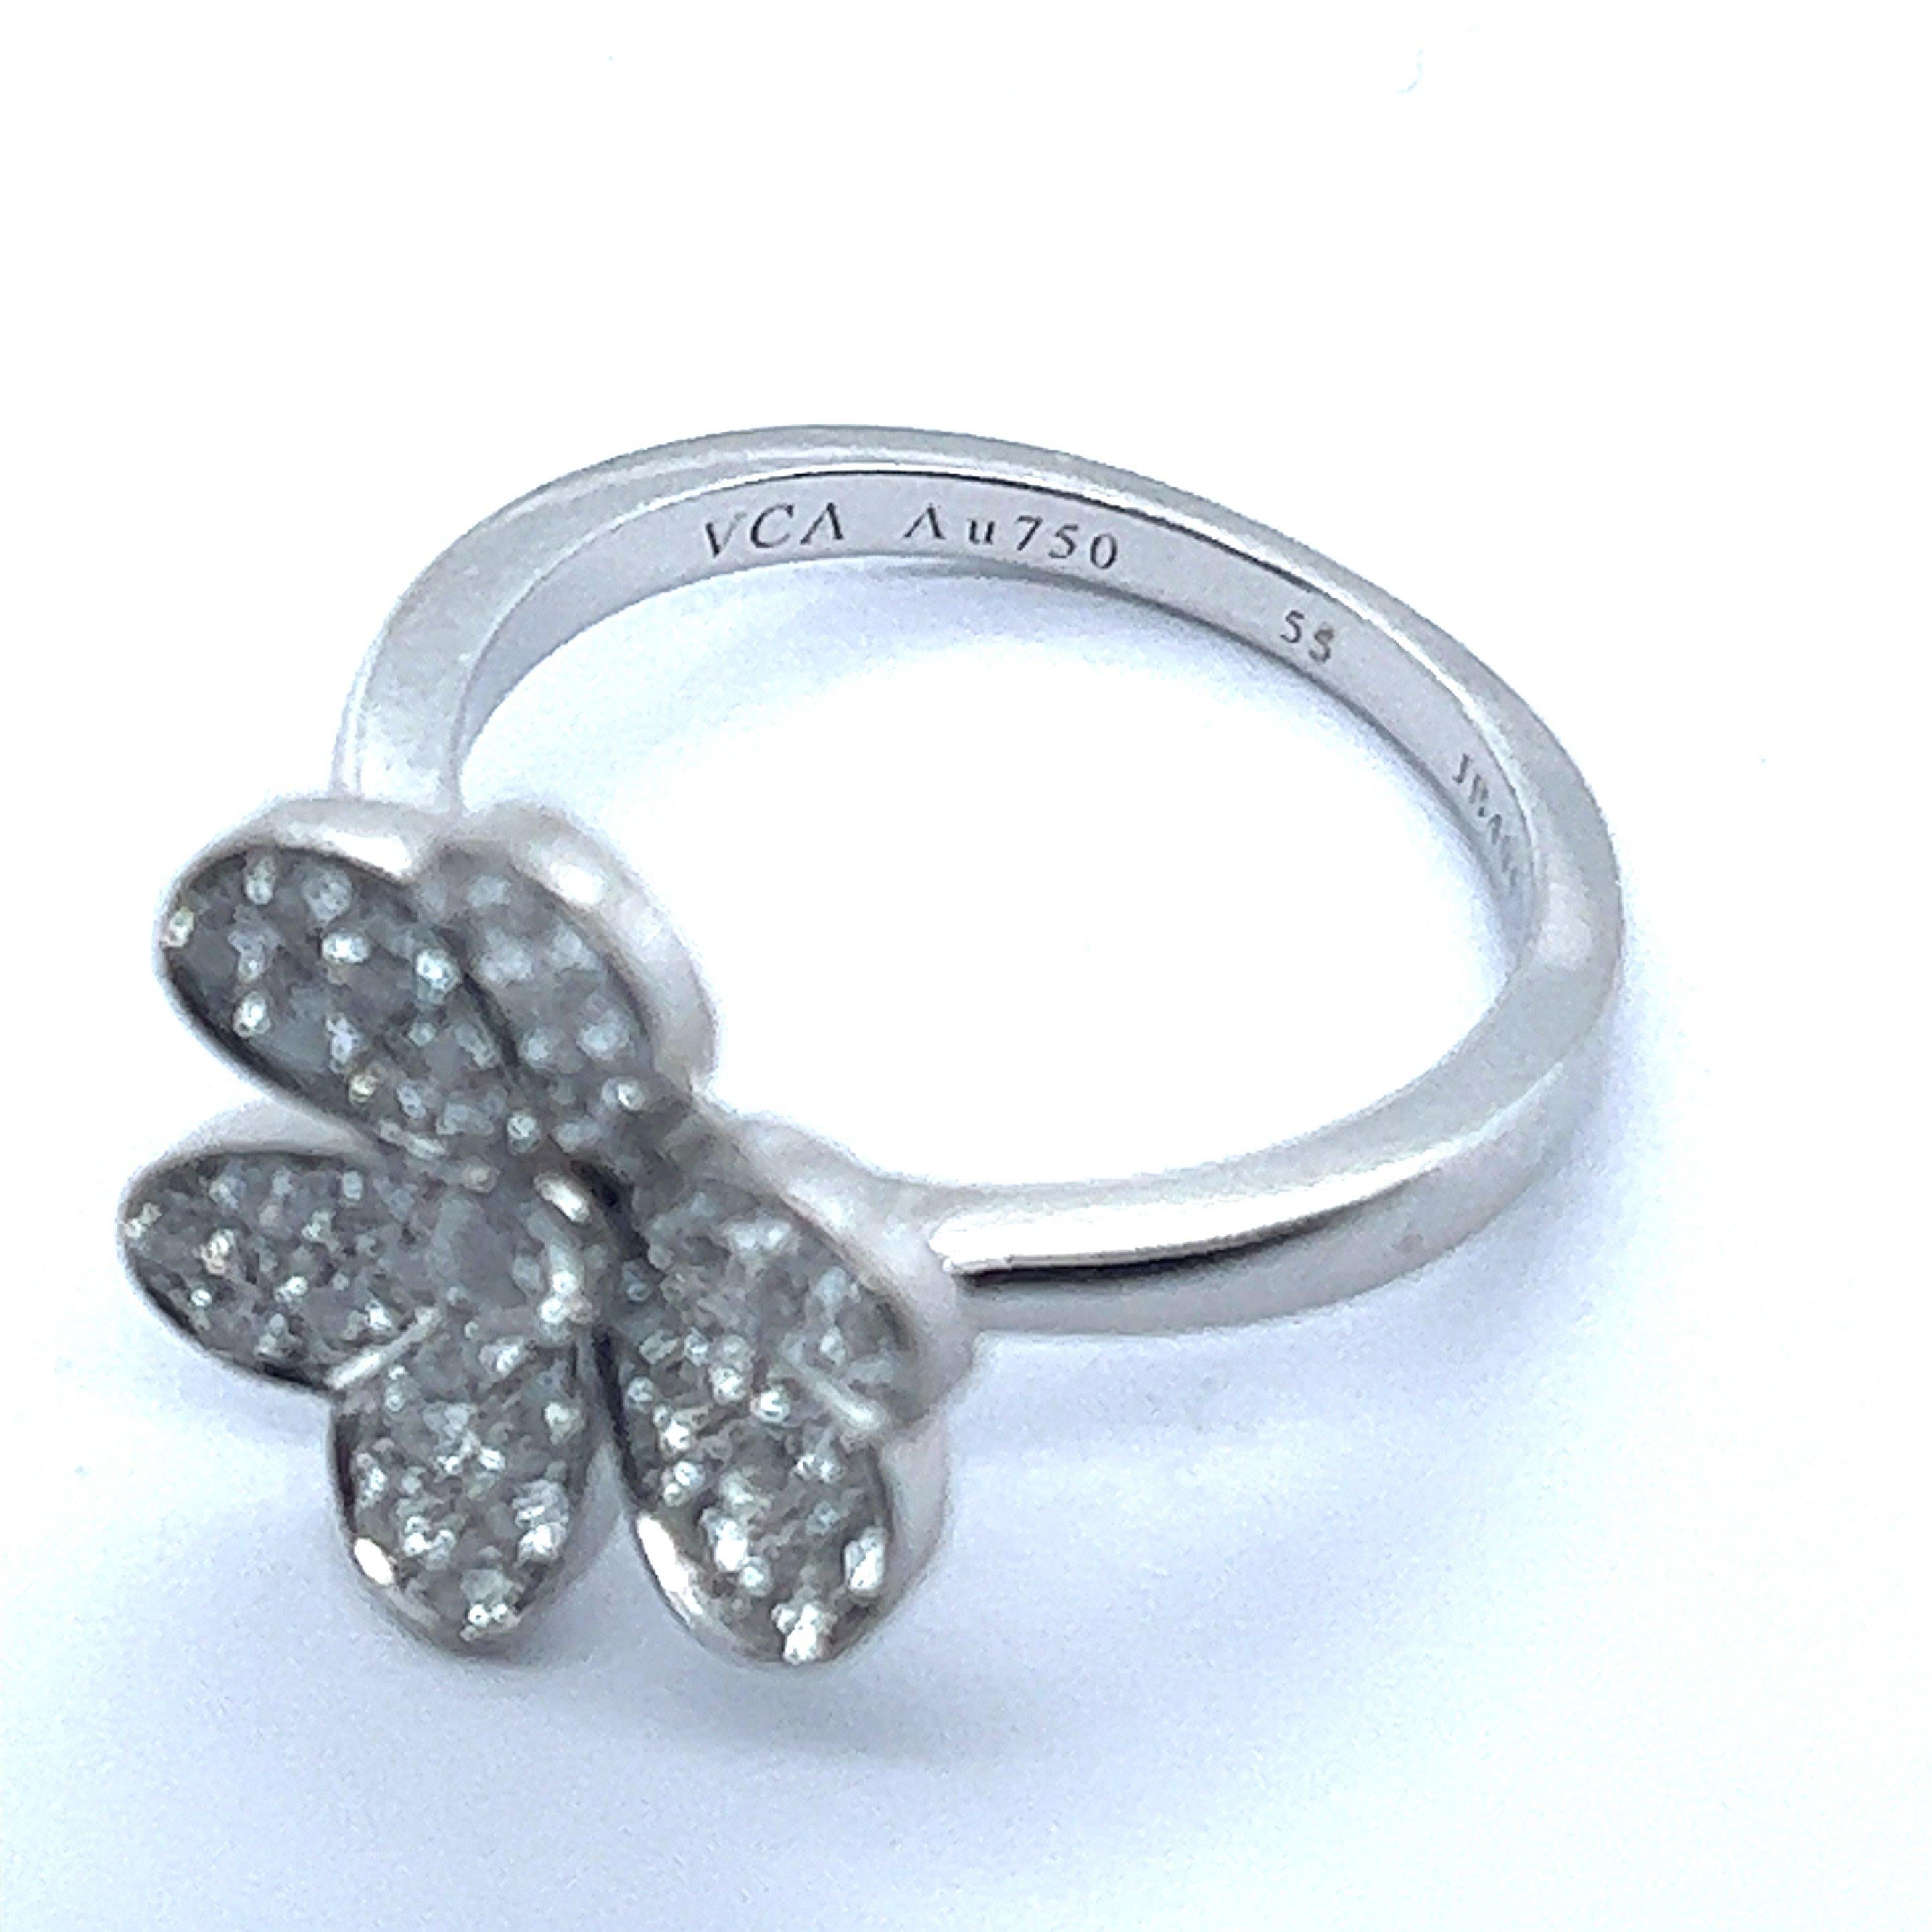 Brilliant Cut Van Cleef & Arpels Frivole Flower Diamond Ring in 18 Karat White Gold